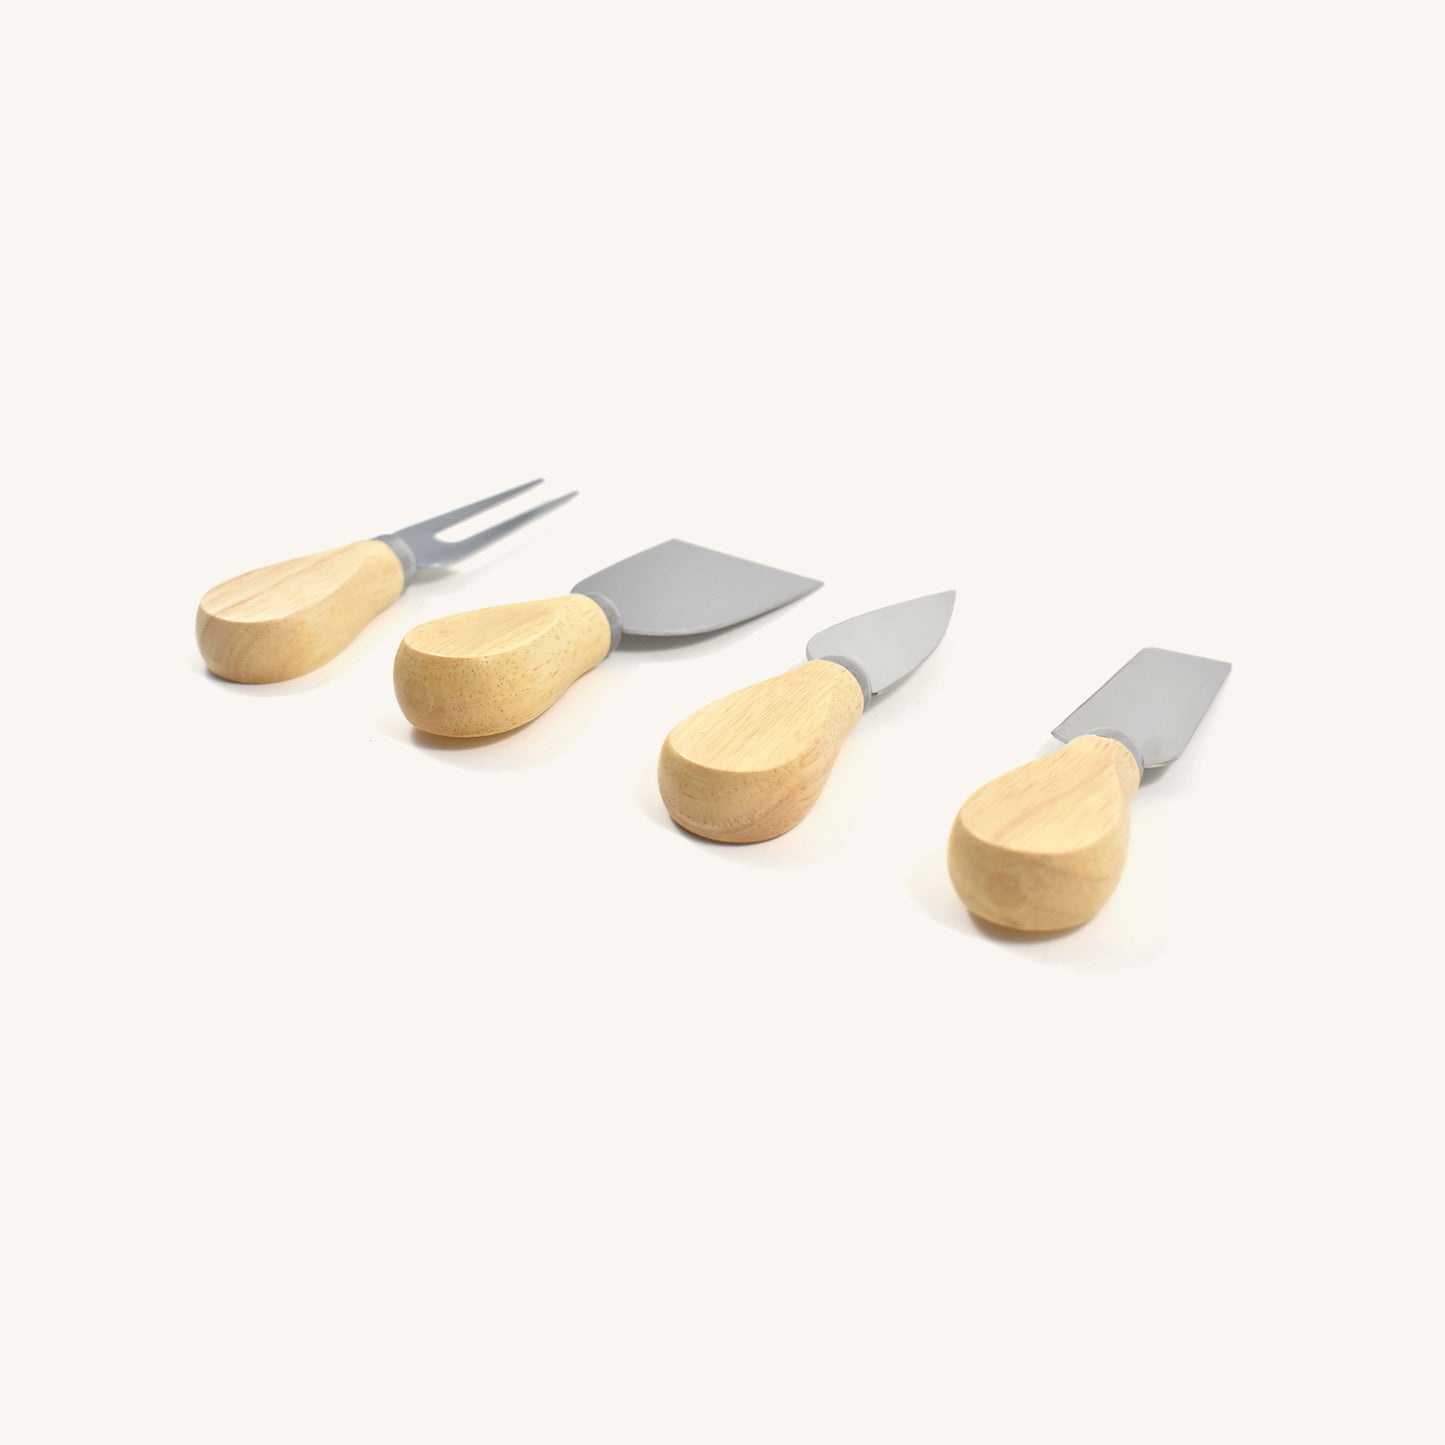 Juego de cuchillos para queso de madera de 4 piezas